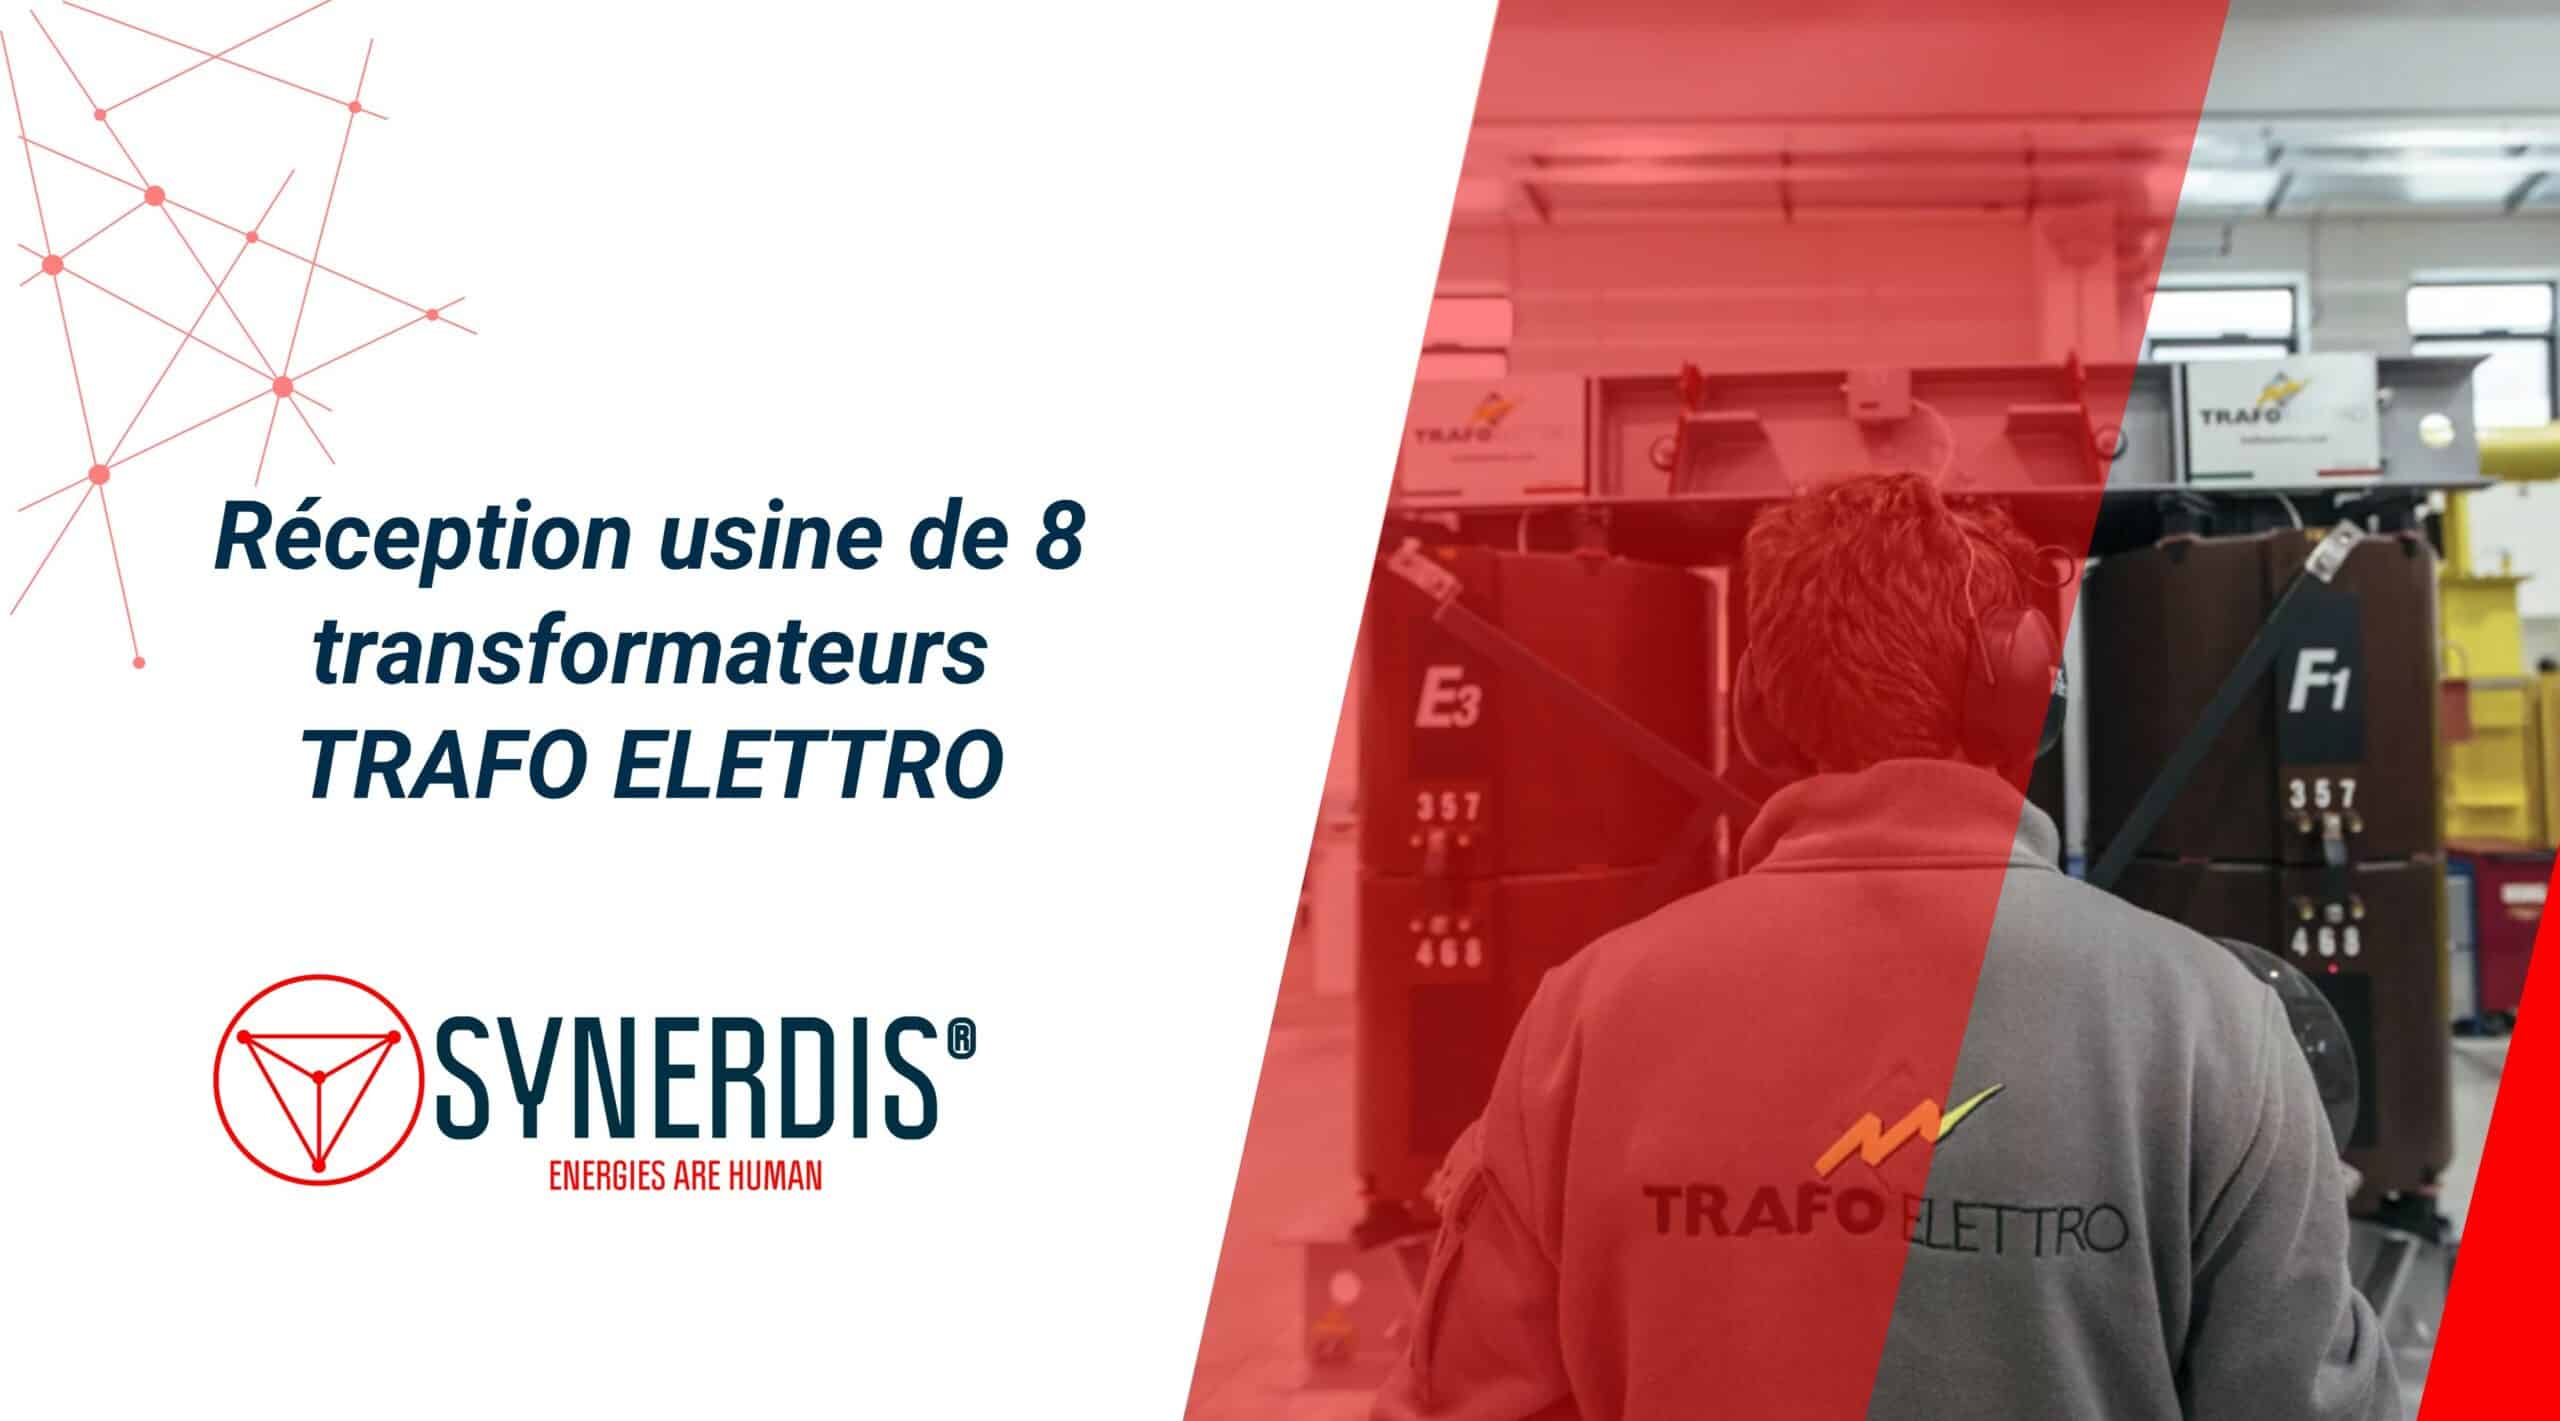 Progetto Synerdis: accettazione in fabbrica di 8 trasformatori Trafo ELETTRO